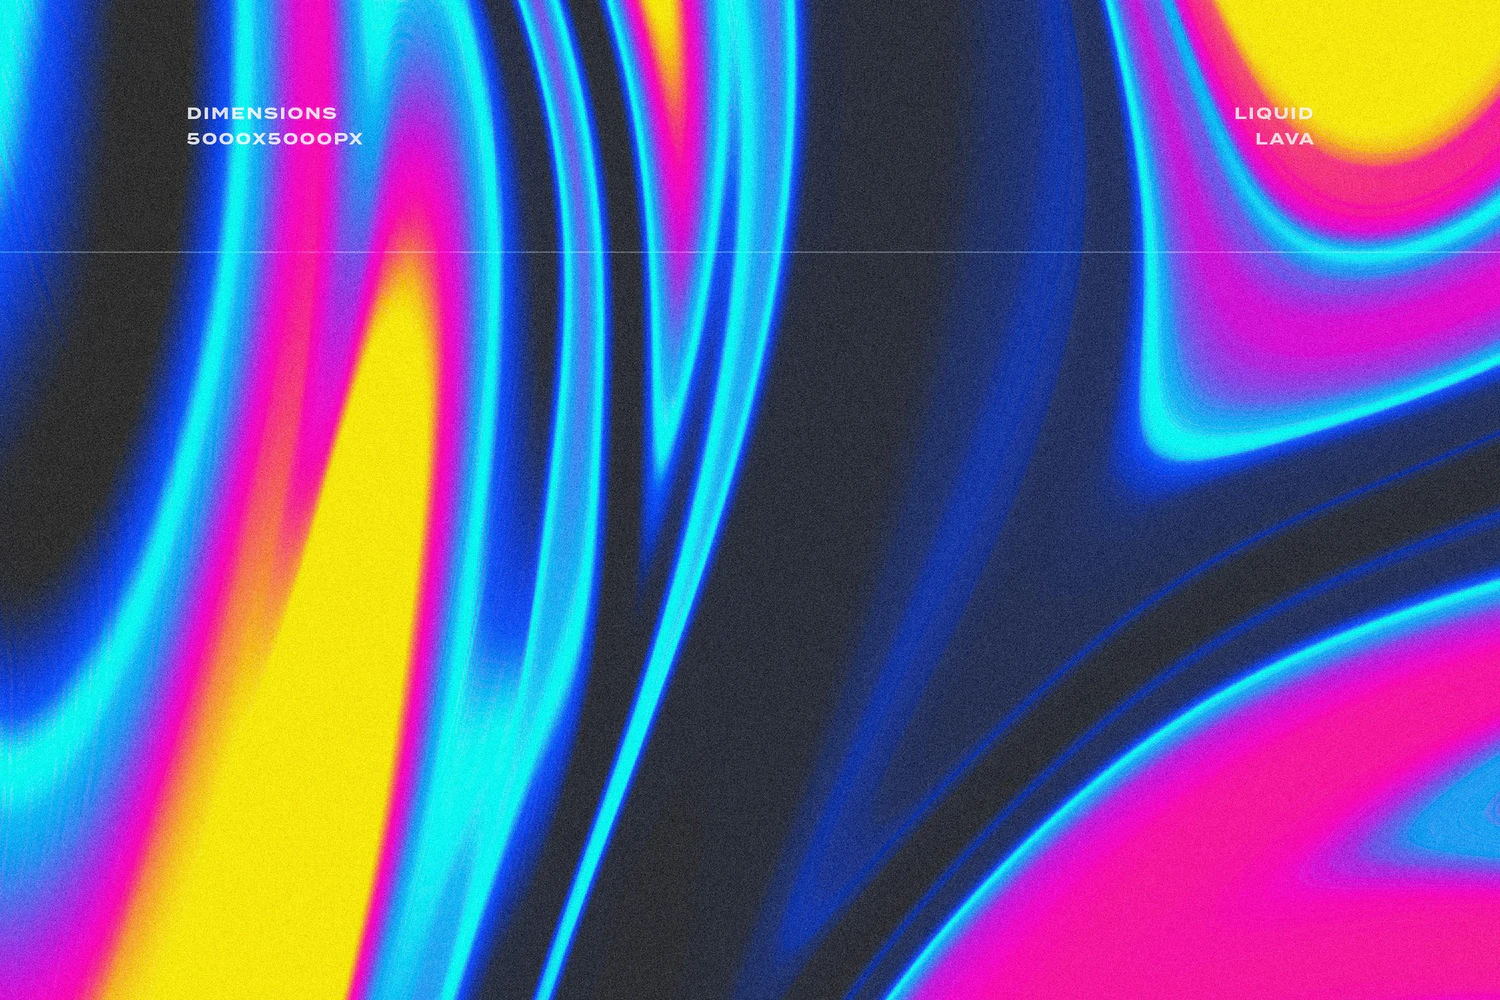 3987 20款抽象艺术流体渐变迷幻液体熔岩撞色海报背景底纹图片设计素材 Liquid-Lava-Luminescent-Textures@GOOODME.COM